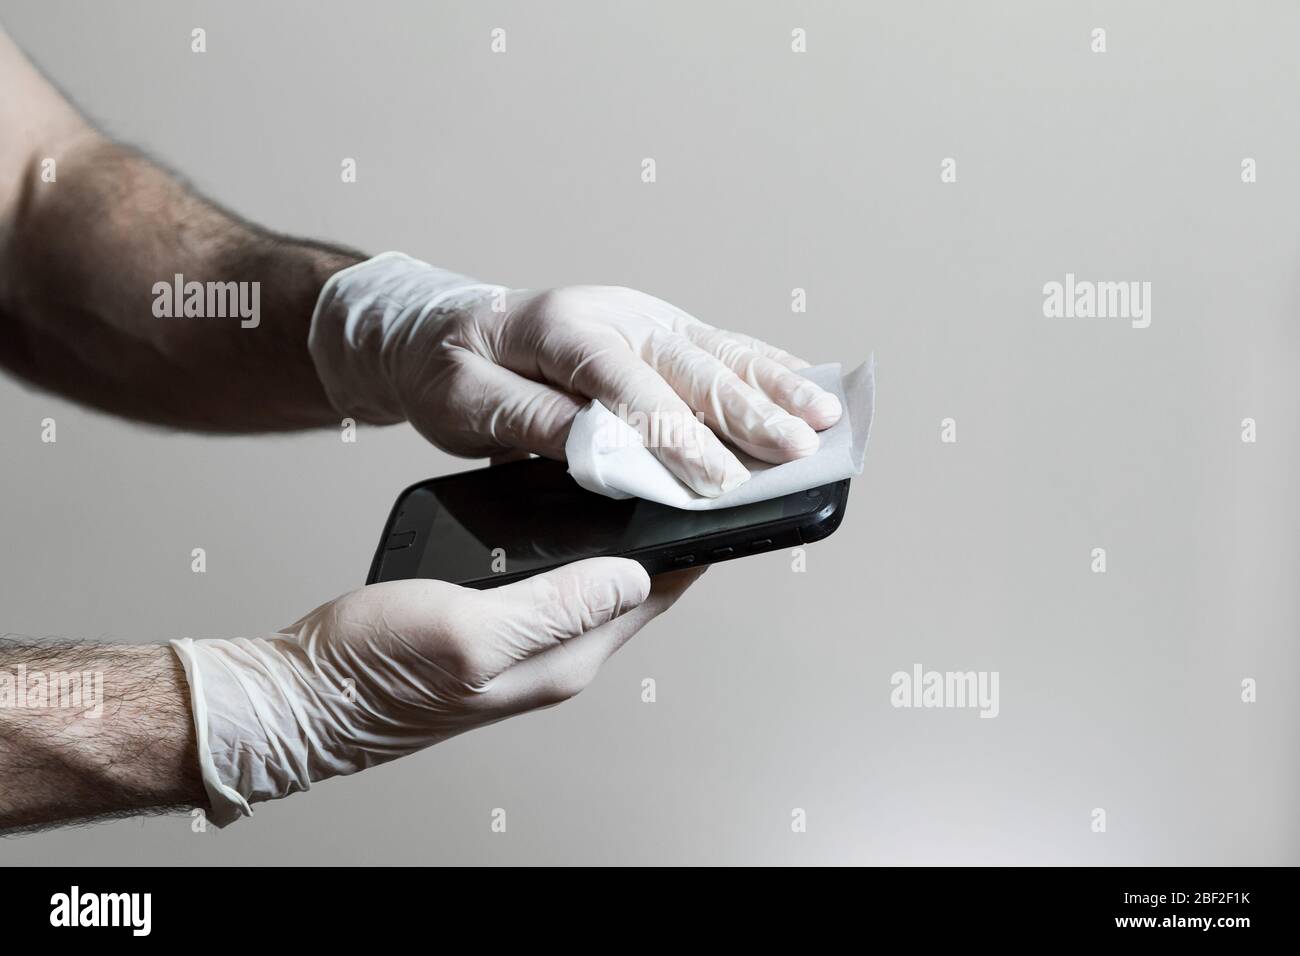 Un hombre manos con guantes de látex limpiando su teléfono celular con una toallita desinfectante durante la pandemia de Covid 19. Foto de stock